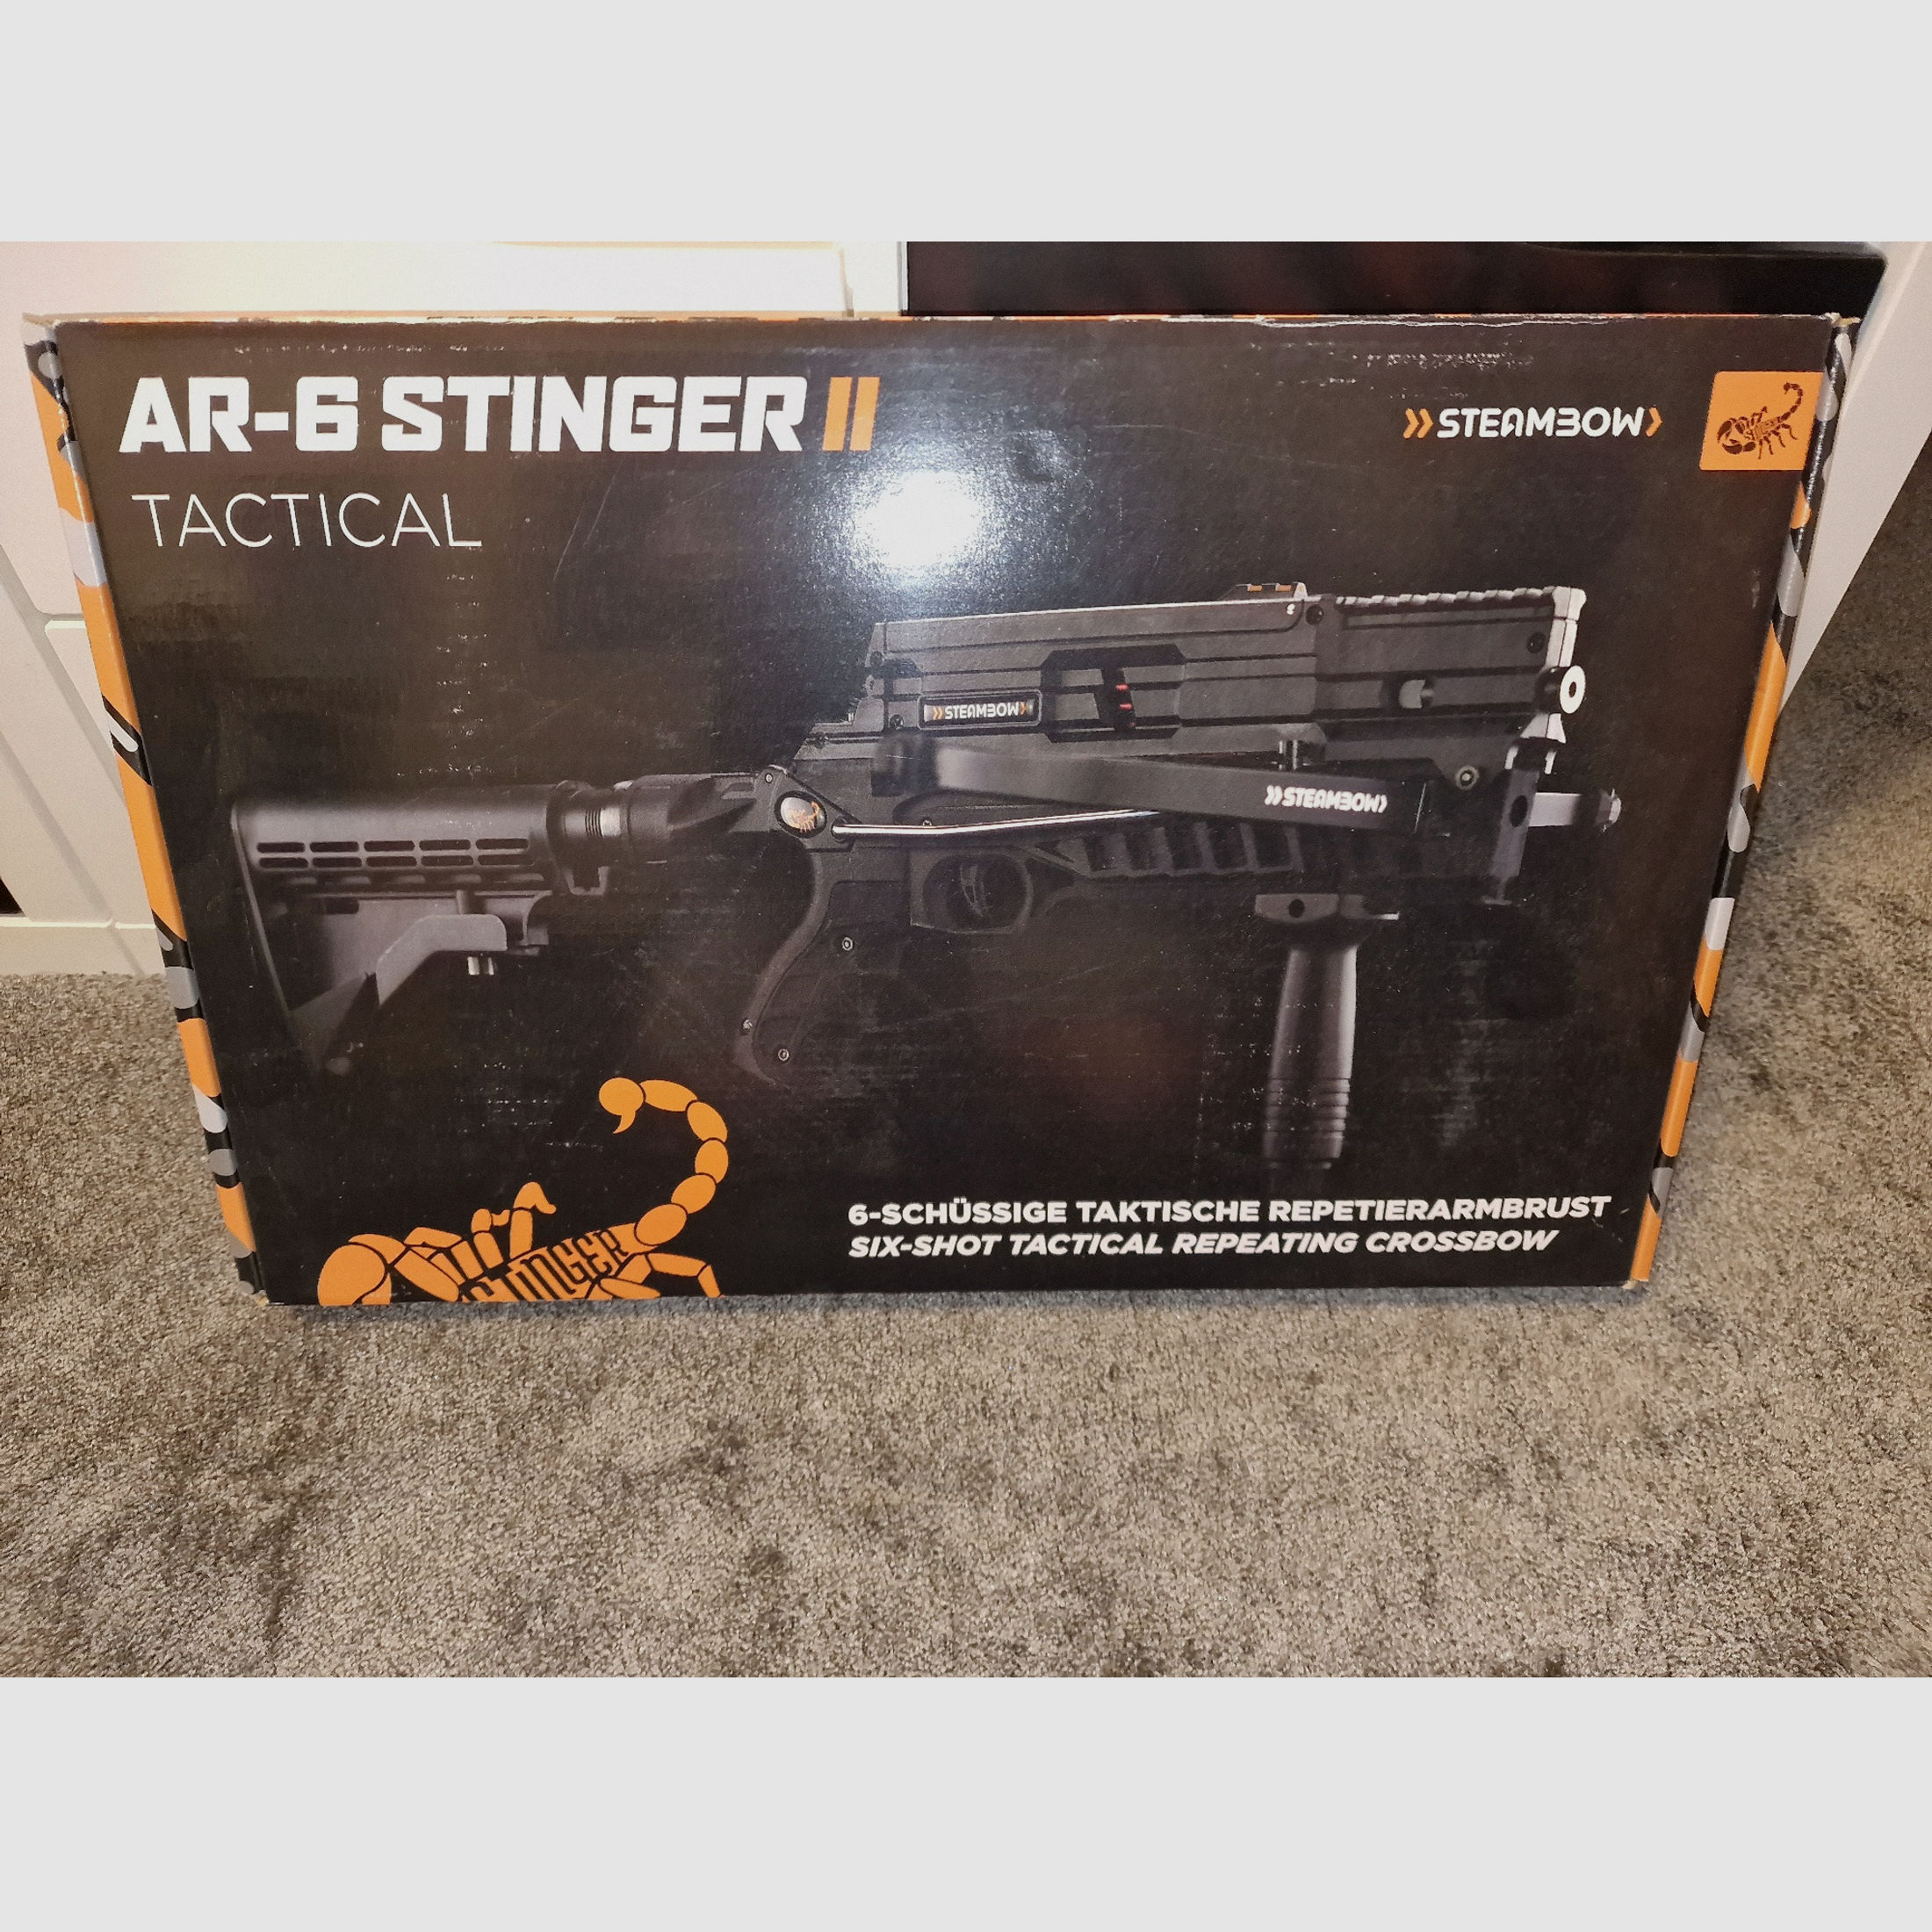 Steambow AR-6 Stinger II Tactical # NEU & versiegelt